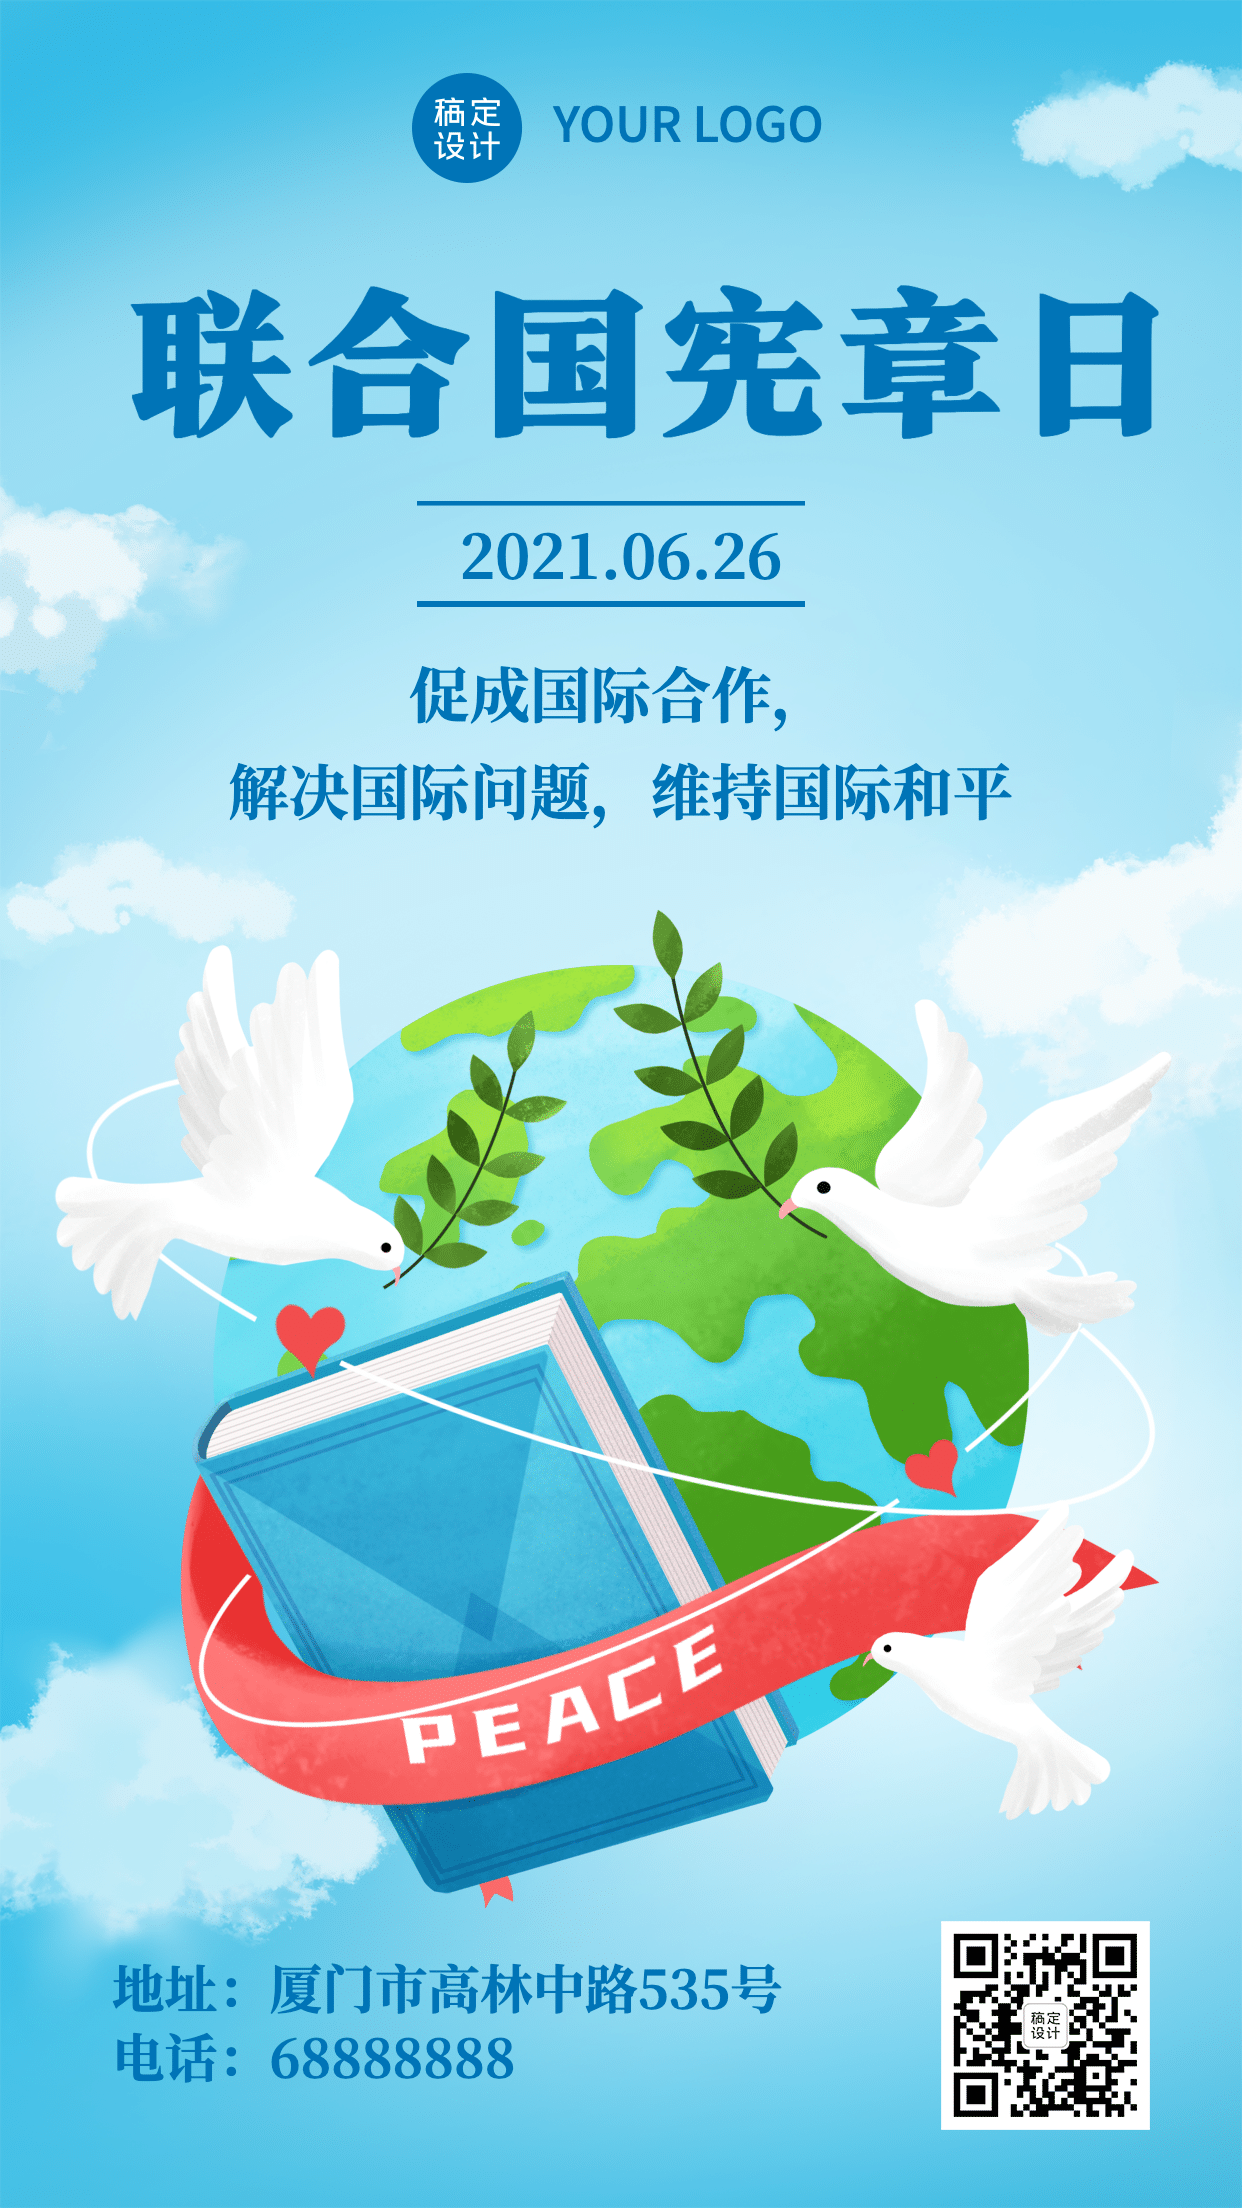 6.26联合国宪章日公益宣传手绘手机海报